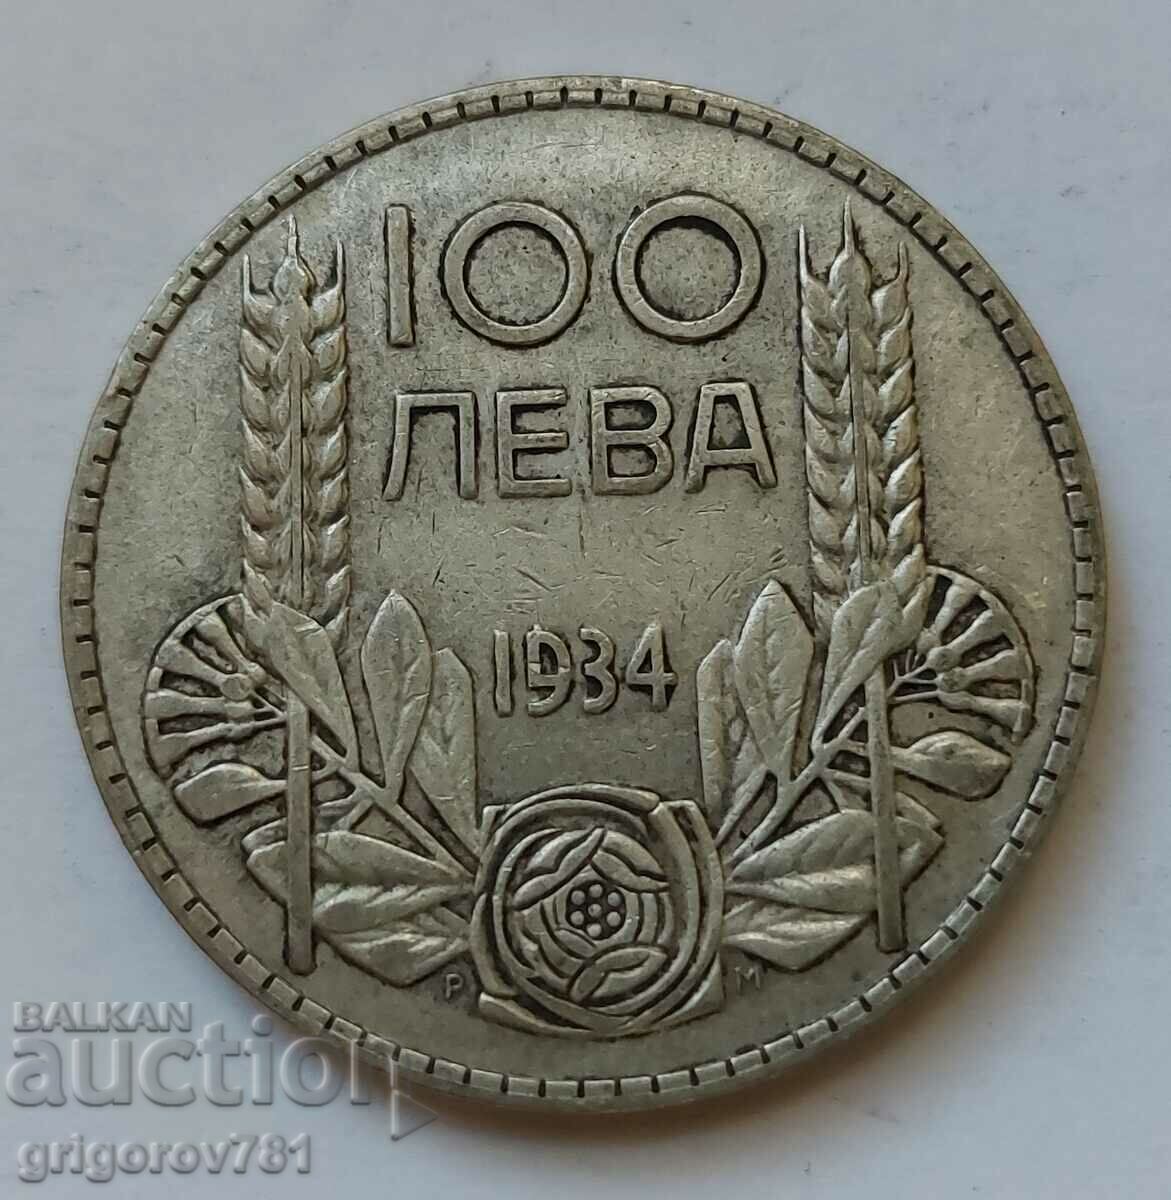 100 leva argint Bulgaria 1934 - monedă de argint #127